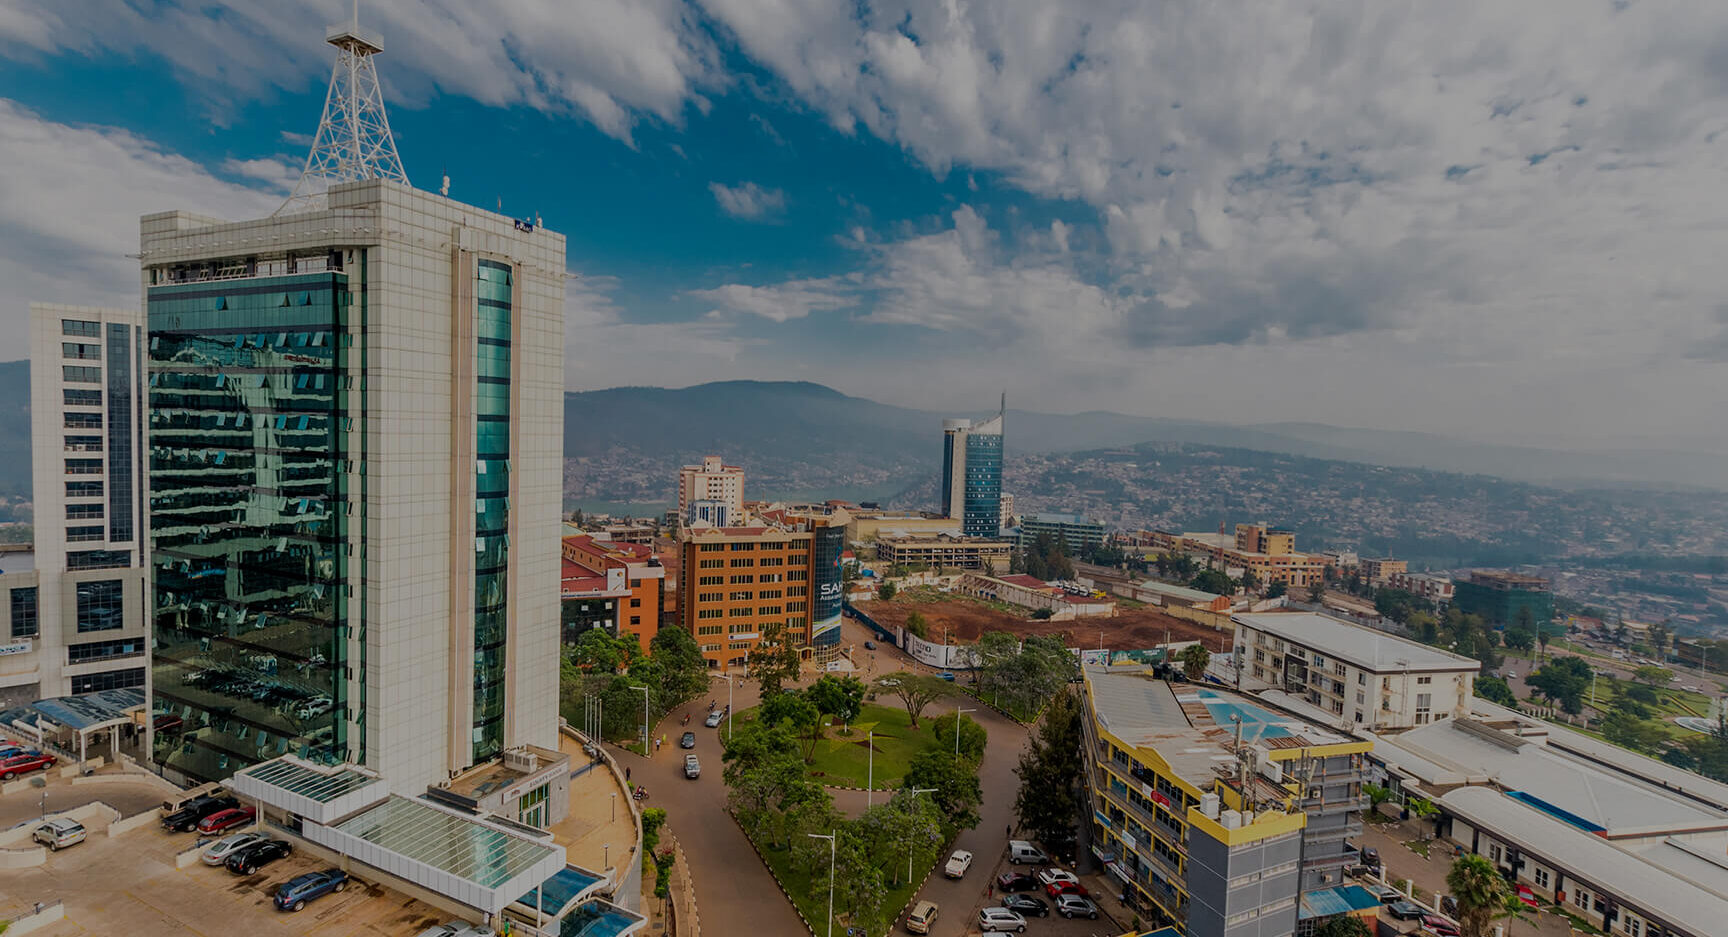 Skyline of Rwanda